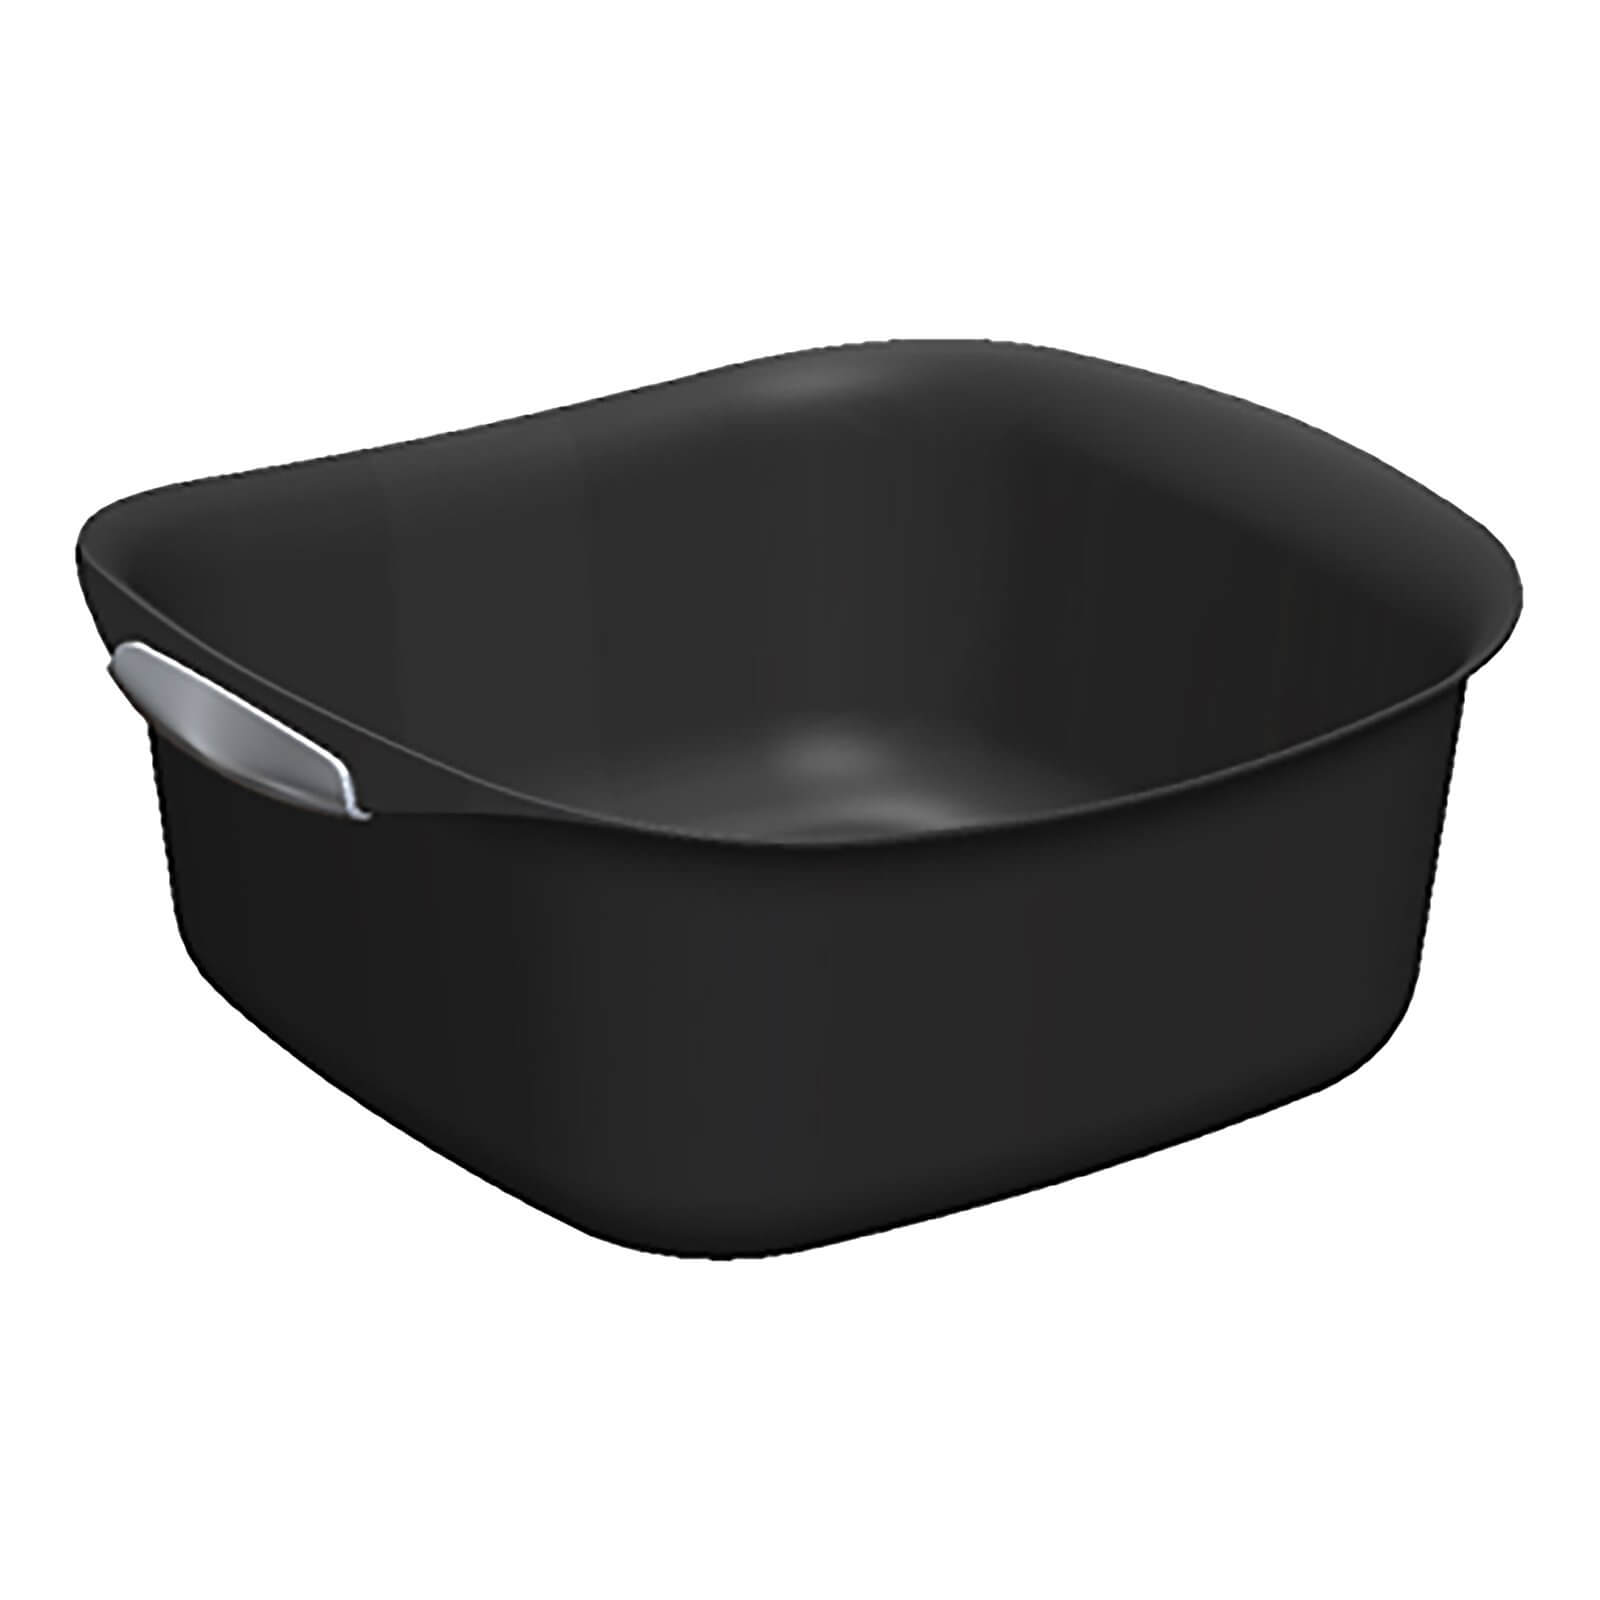 Curver Urban Plastic Rectangle Kitchen Bowl Black 8L